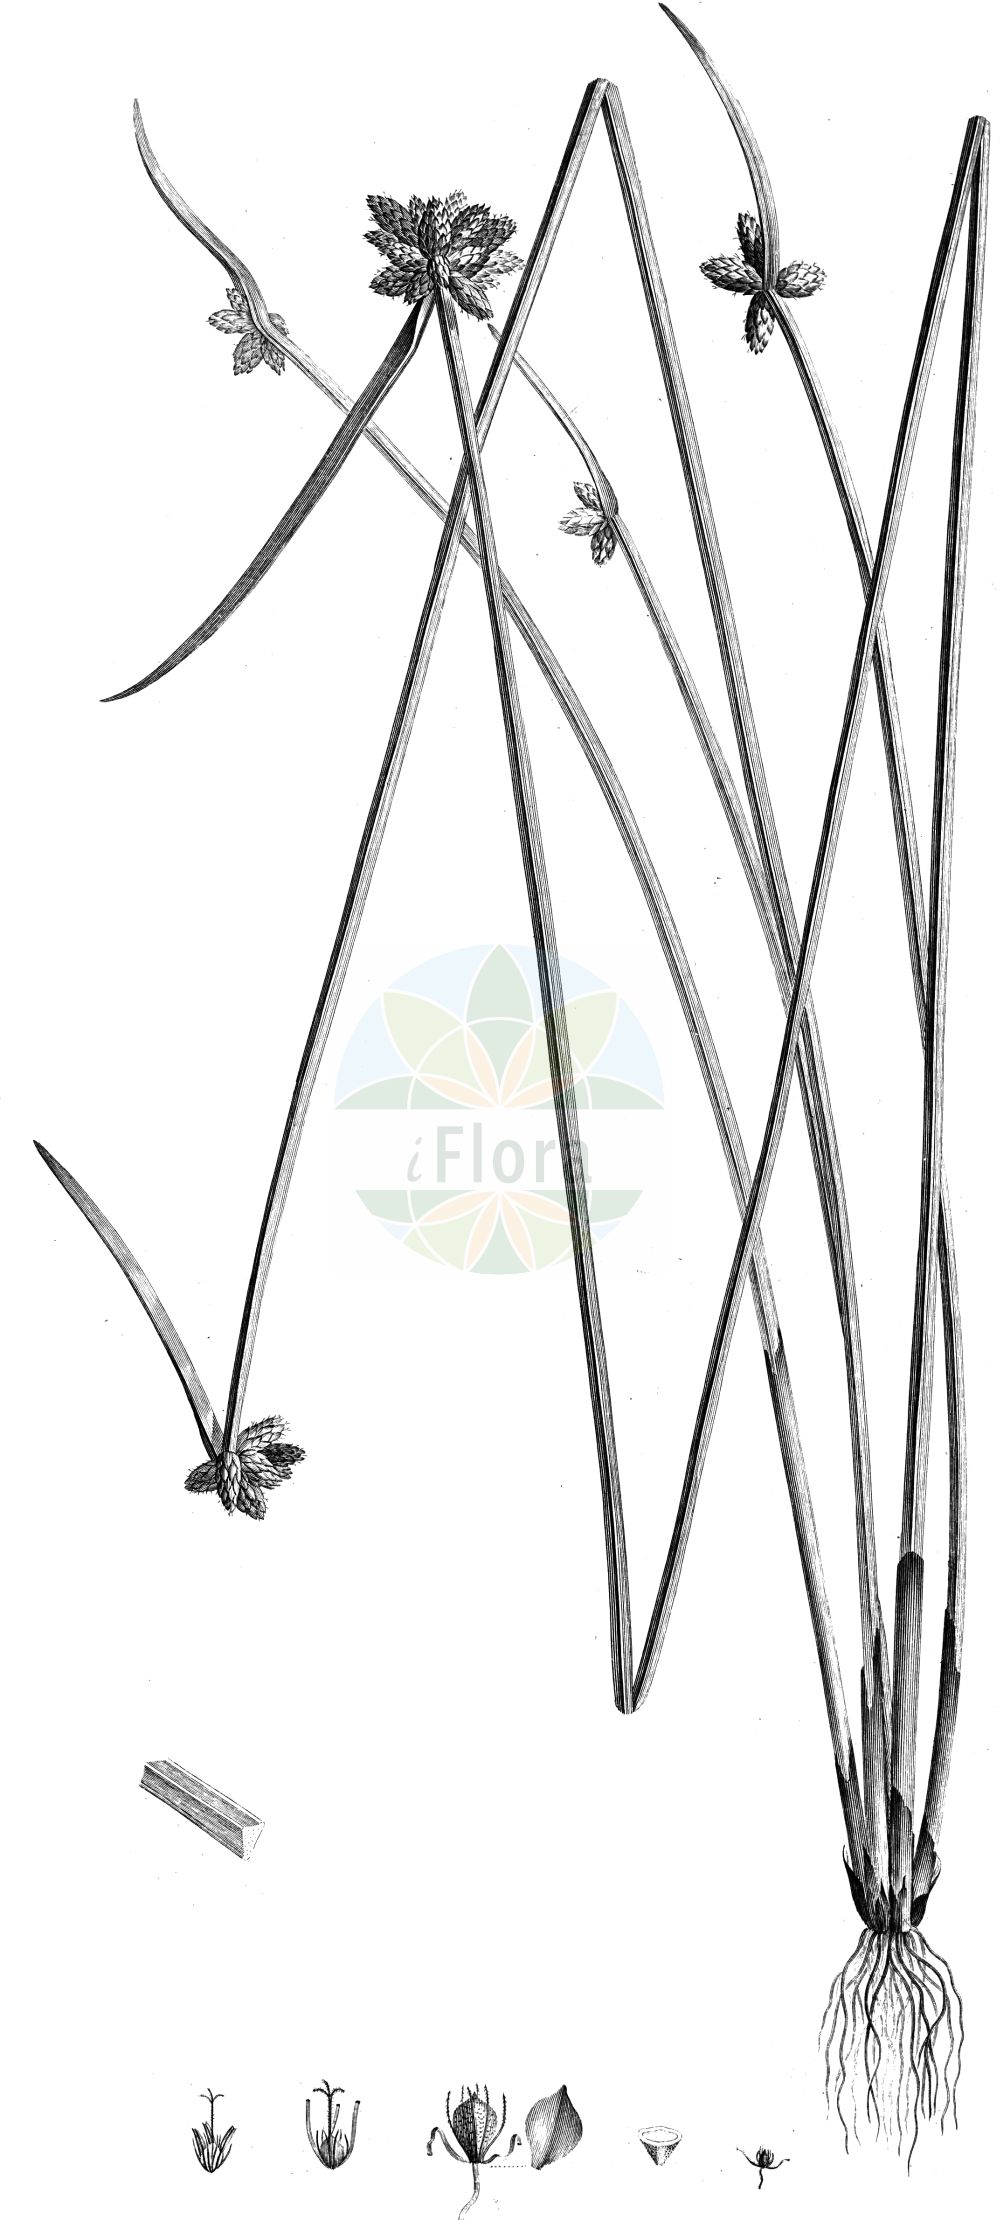 Historische Abbildung von Schoenoplectus mucronatus (Stachelspitzige Teichsimse - Rice-field Bulrush). Das Bild zeigt Blatt, Bluete, Frucht und Same. ---- Historical Drawing of Schoenoplectus mucronatus (Stachelspitzige Teichsimse - Rice-field Bulrush). The image is showing leaf, flower, fruit and seed.(Schoenoplectus mucronatus,Stachelspitzige Teichsimse,Rice-field Bulrush,Schoenoplectus mucronatus,Scirpus mucronatus,Stachelspitzige Teichsimse,Stachelige Teichbinse,Rice-field Bulrush,Bog Bulrush,Rough-seed Bulrush,Rough-seed Clubrush,Schoenoplectus,Teichsimse,Bulrush,Cyperaceae,Sauergräser,Sedge family,Blatt,Bluete,Frucht,Same,leaf,flower,fruit,seed,Raffeneau-Delile (1813))